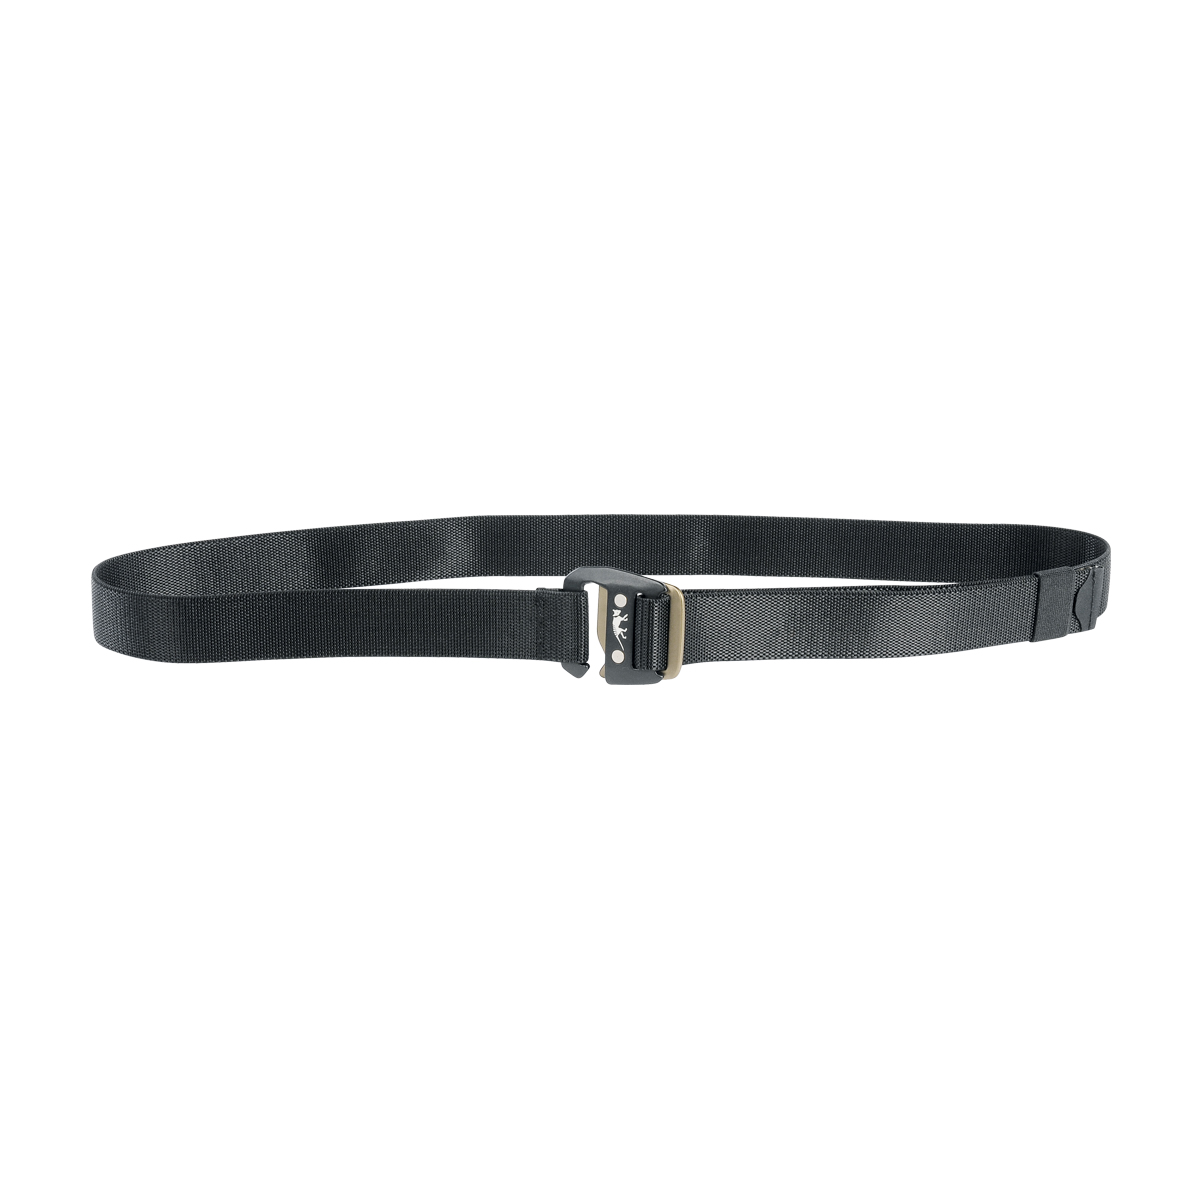 Produktbild von Tasmanian Tiger TT Stretch Belt, schwarz, Elastischer Gürtel mit Hakenschließe aus Aluminium